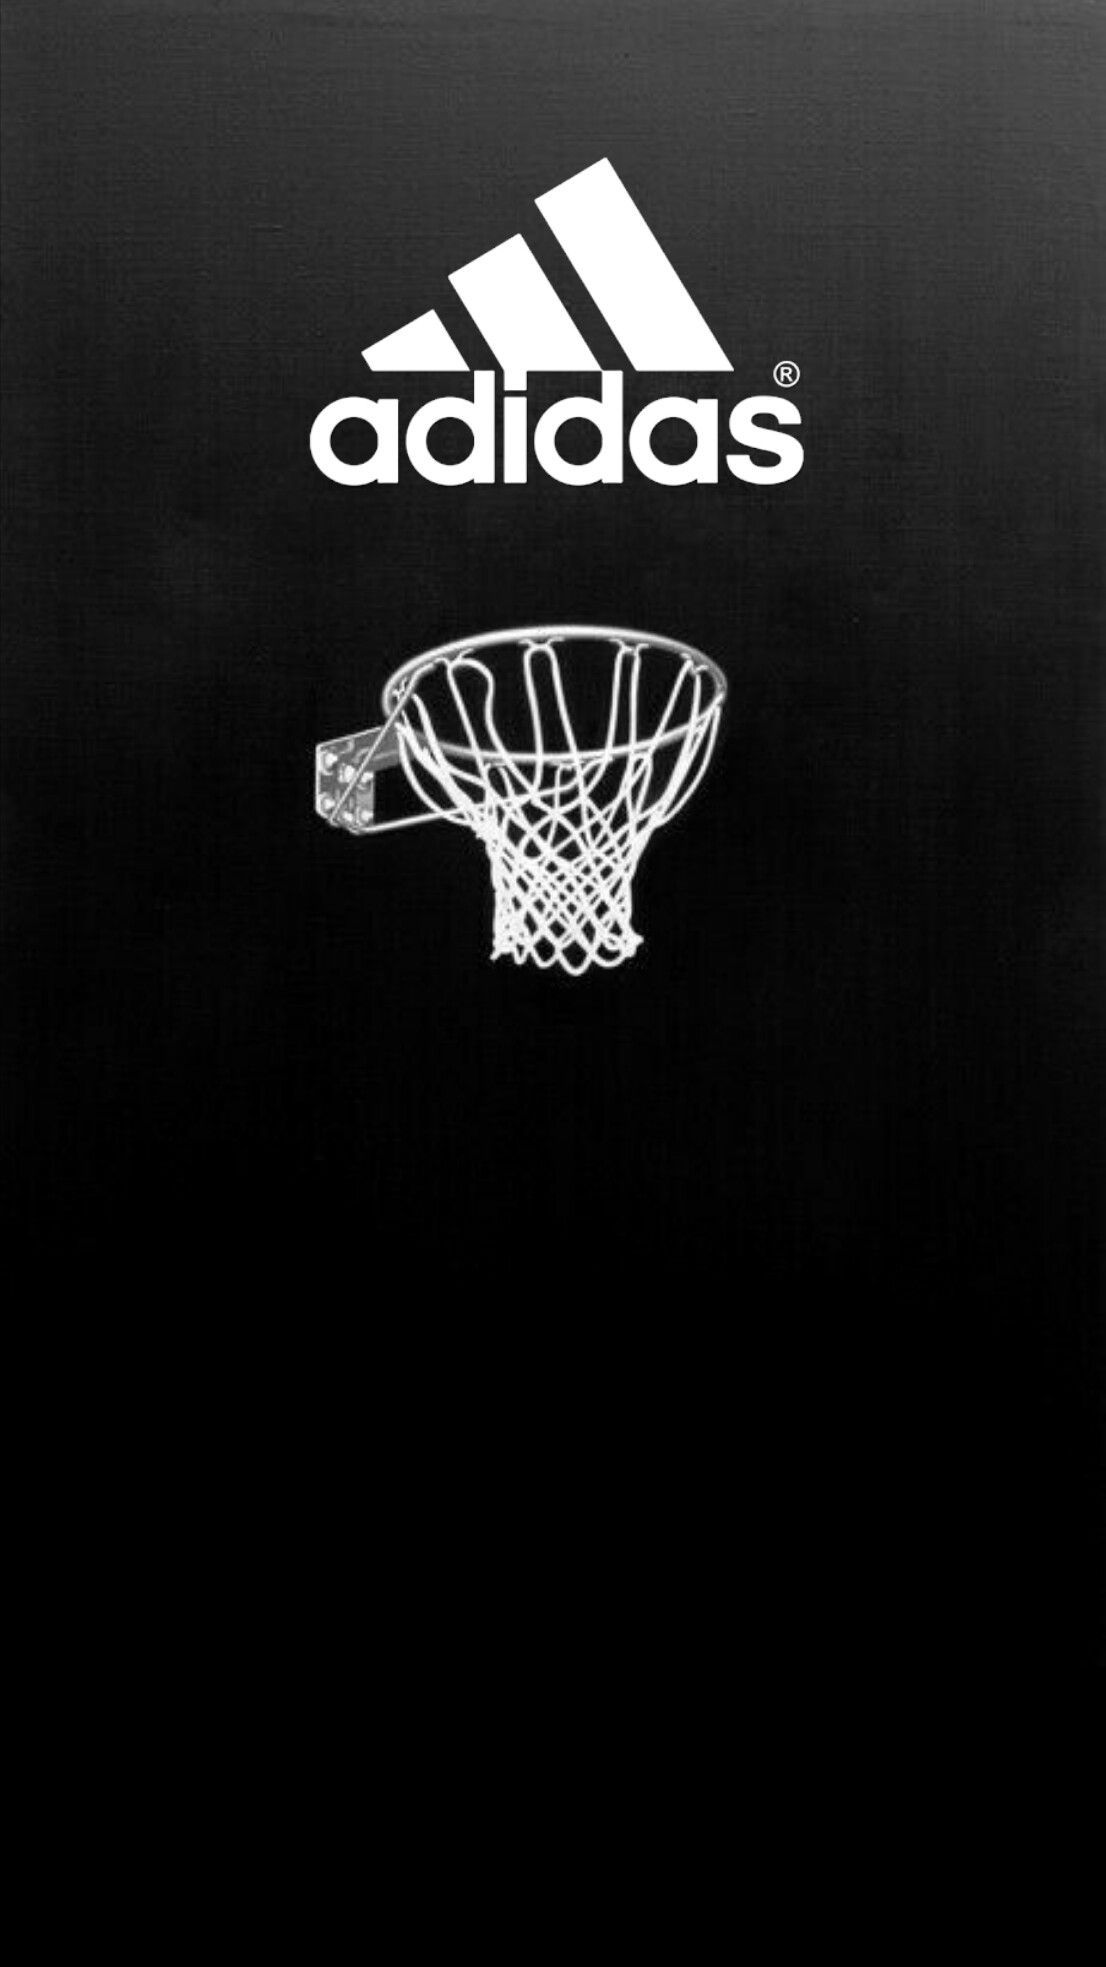 Adidas Basketball Wallpapers on WallpaperDog